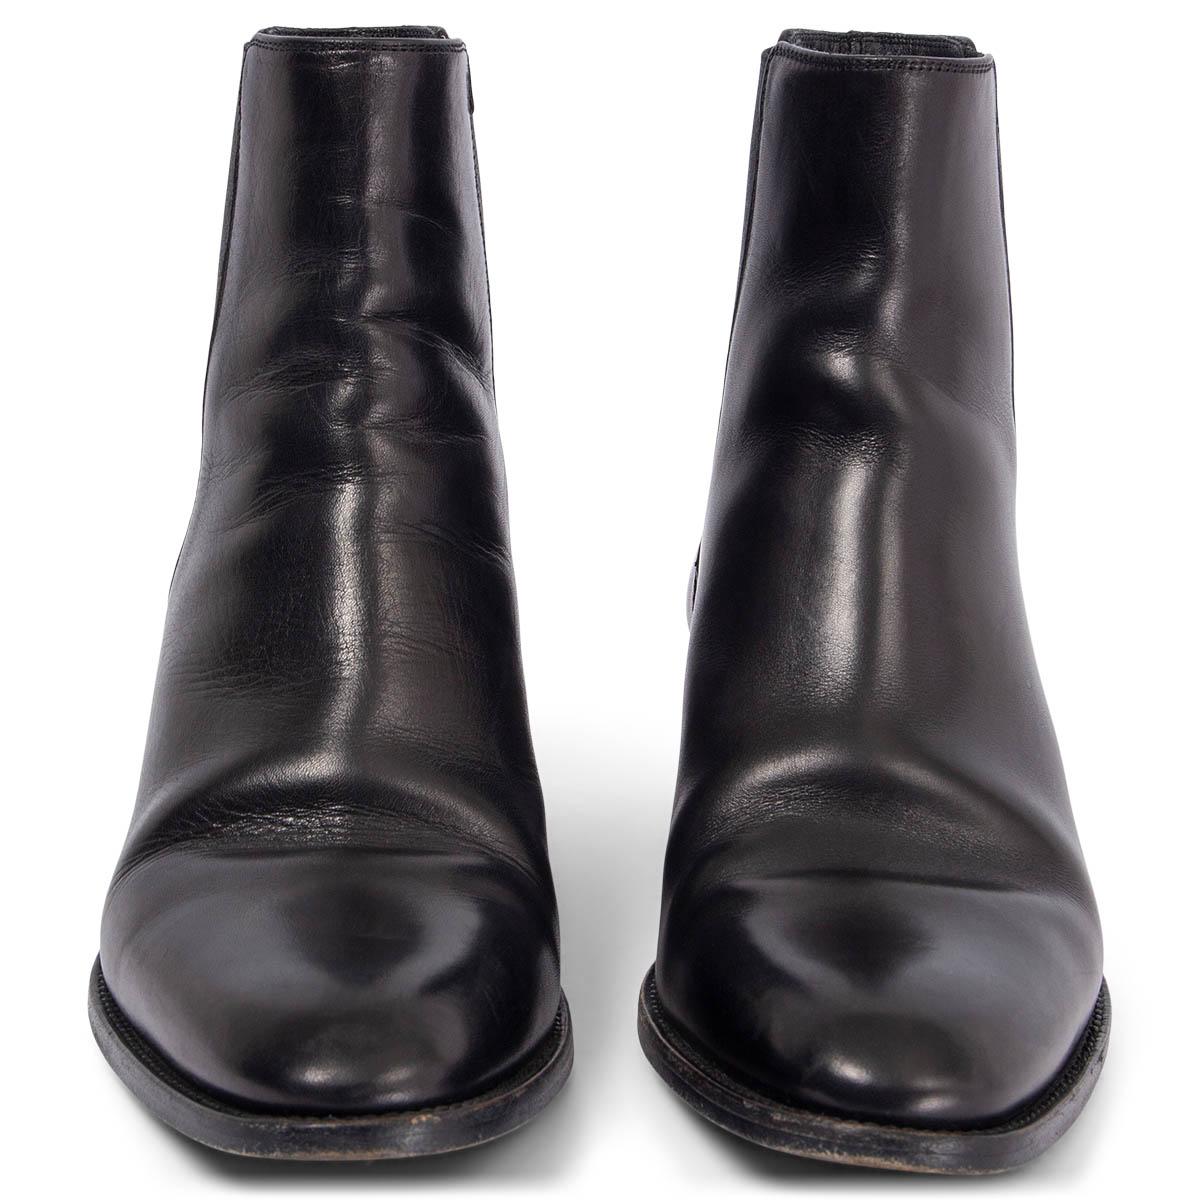 100% authentique Saint Laurent Wyatt 40 chelsea ankle-boots en cuir de veau lisse noir avec des inserts extensibles sur le côté. Ils ont été portés et présentent quelques plis. En général en très bon état. 

Mesures
Taille imprimée	38
Taille des